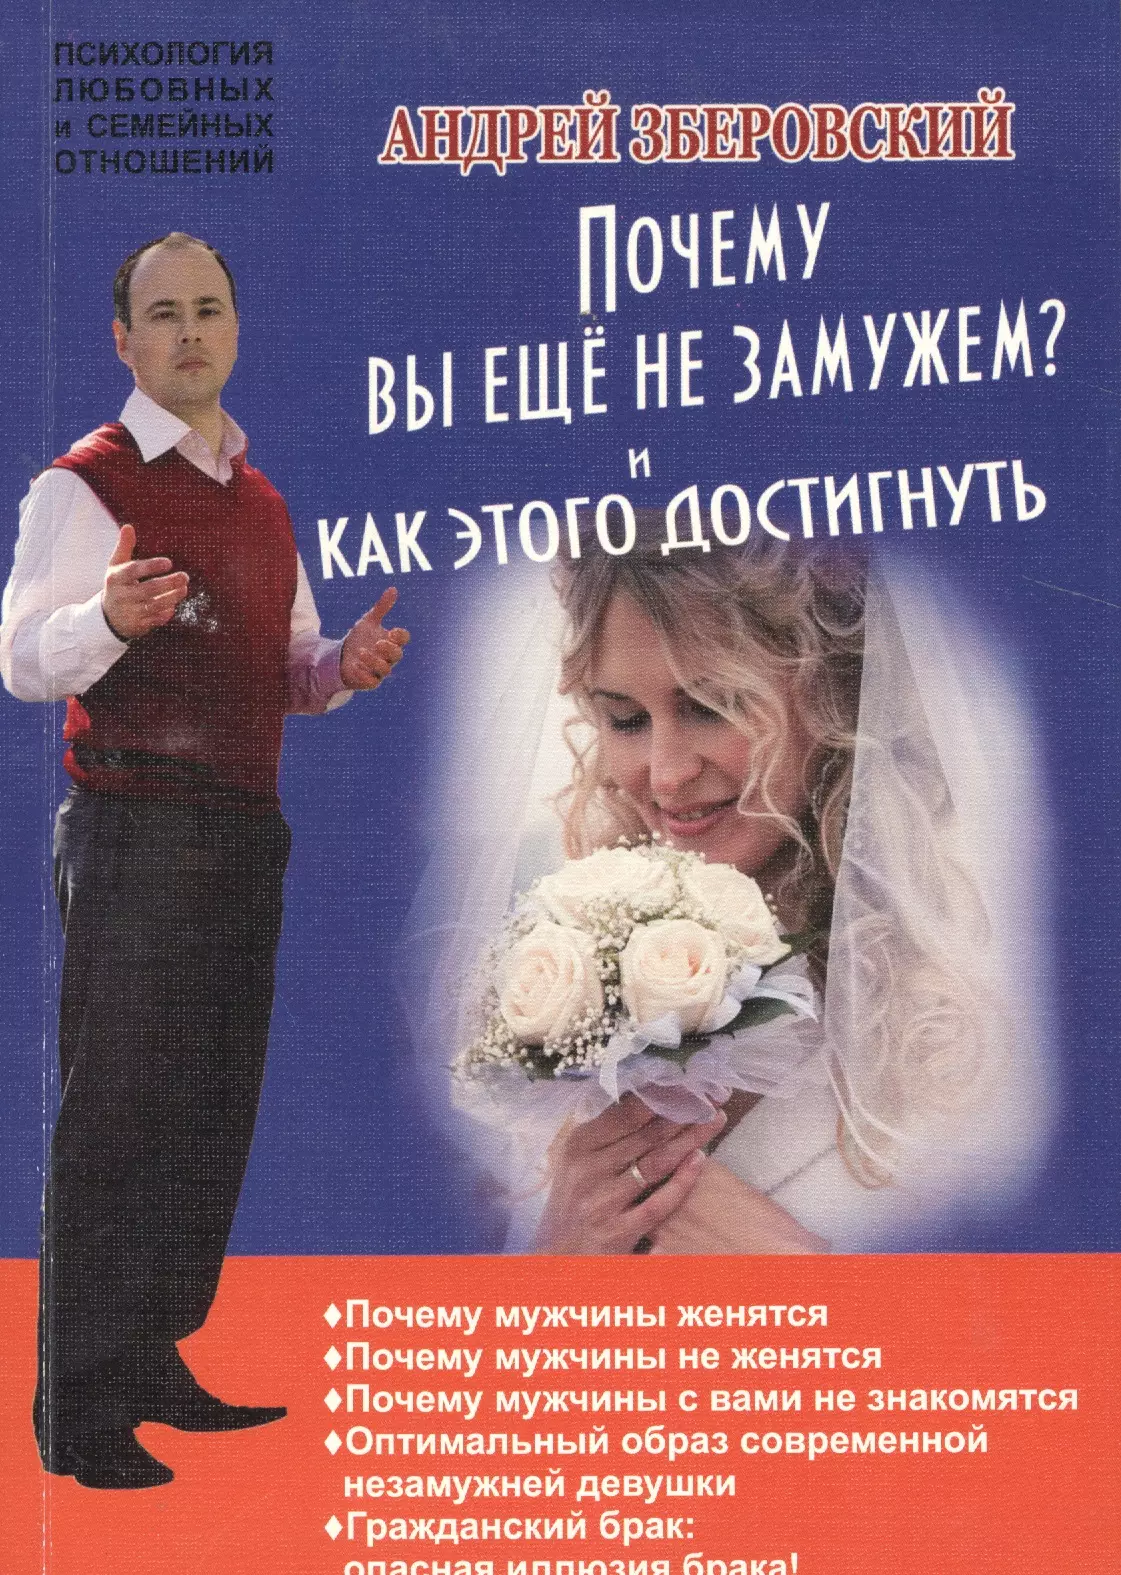 Зберовский Андрей Викторович - Почему вы не замужем? И как этого достигнуть